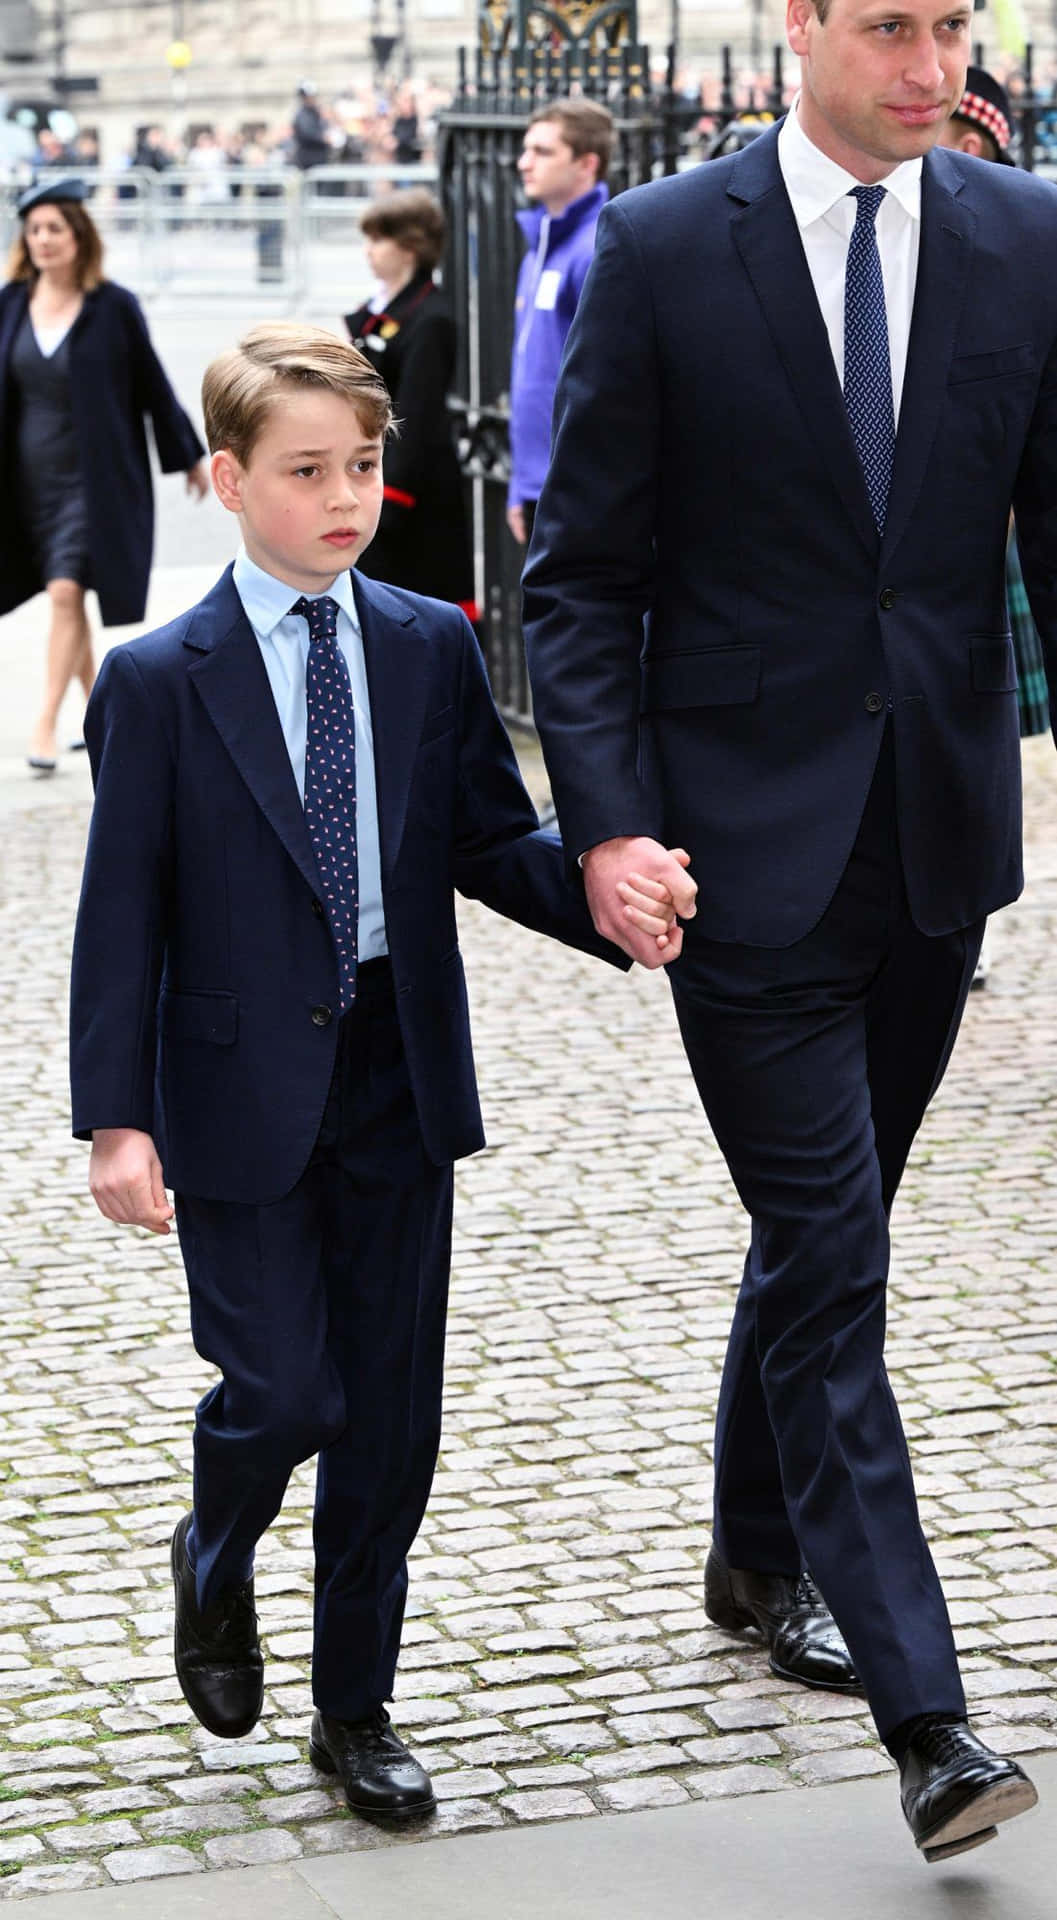 Elpríncipe William Y El Príncipe William Caminan Por La Calle.